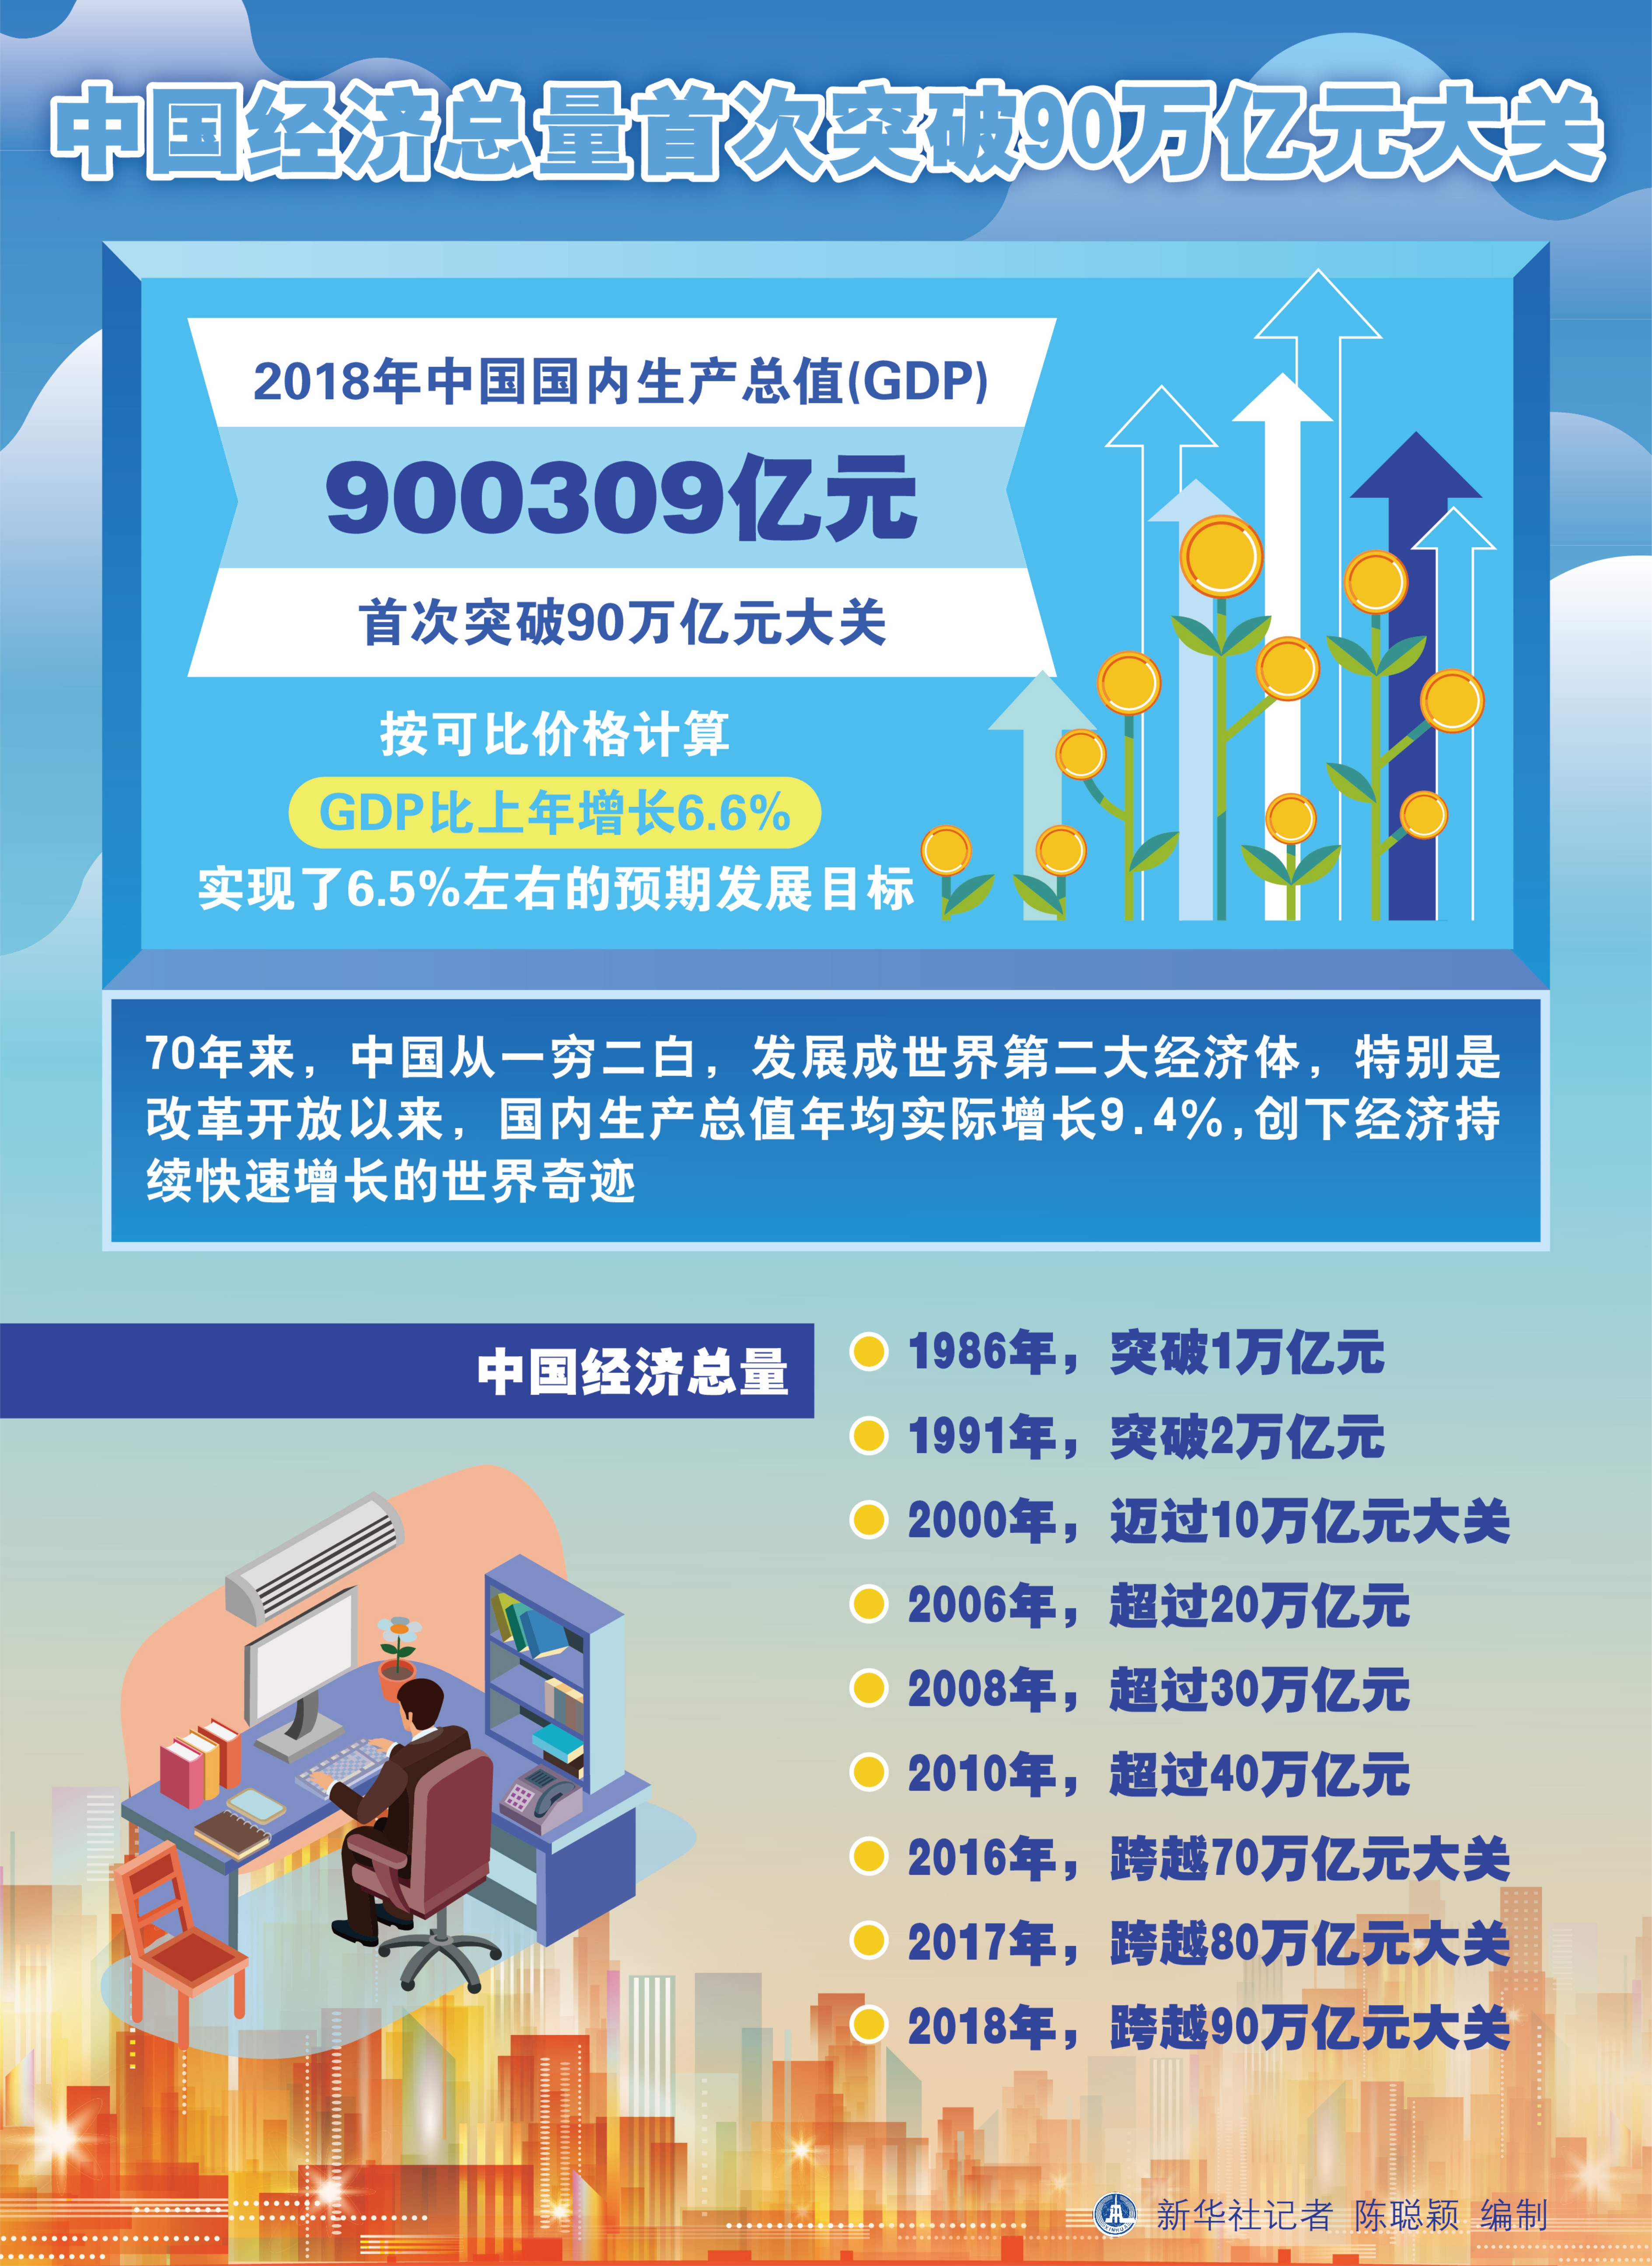 (图表)「壮丽70年·数字看成就」中国经济总量首次突破90万亿元大关